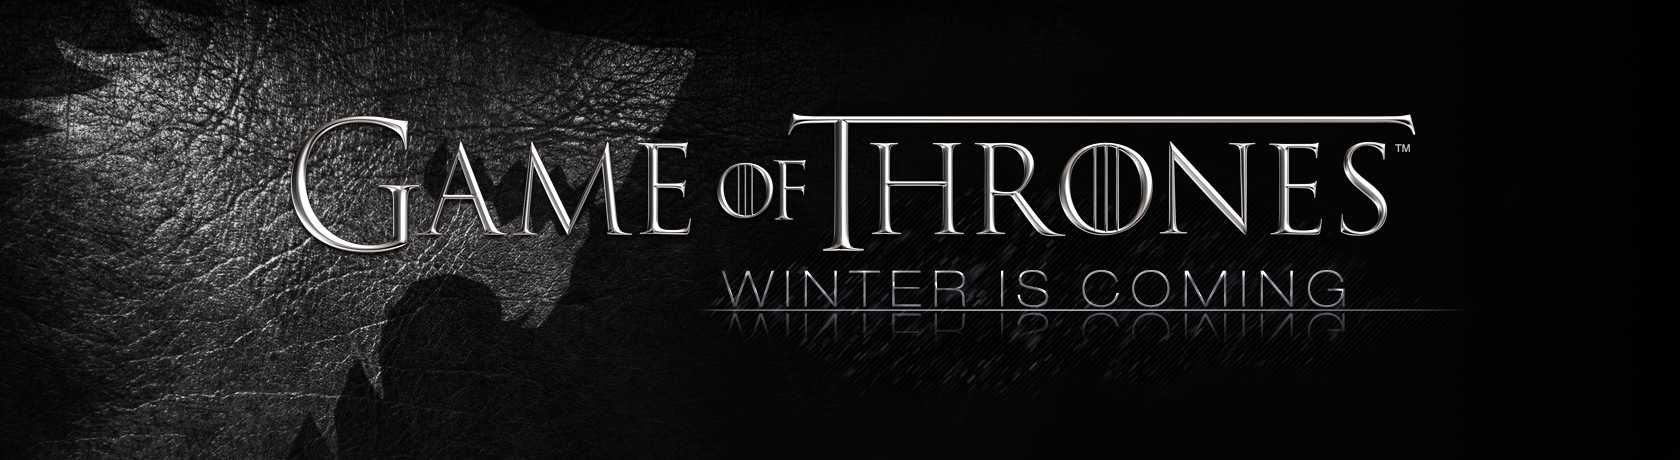 Game of Thrones 7.Sezon 7.Bölüm izle | Yabancı Dizi izle - Yabancidizilertv.com